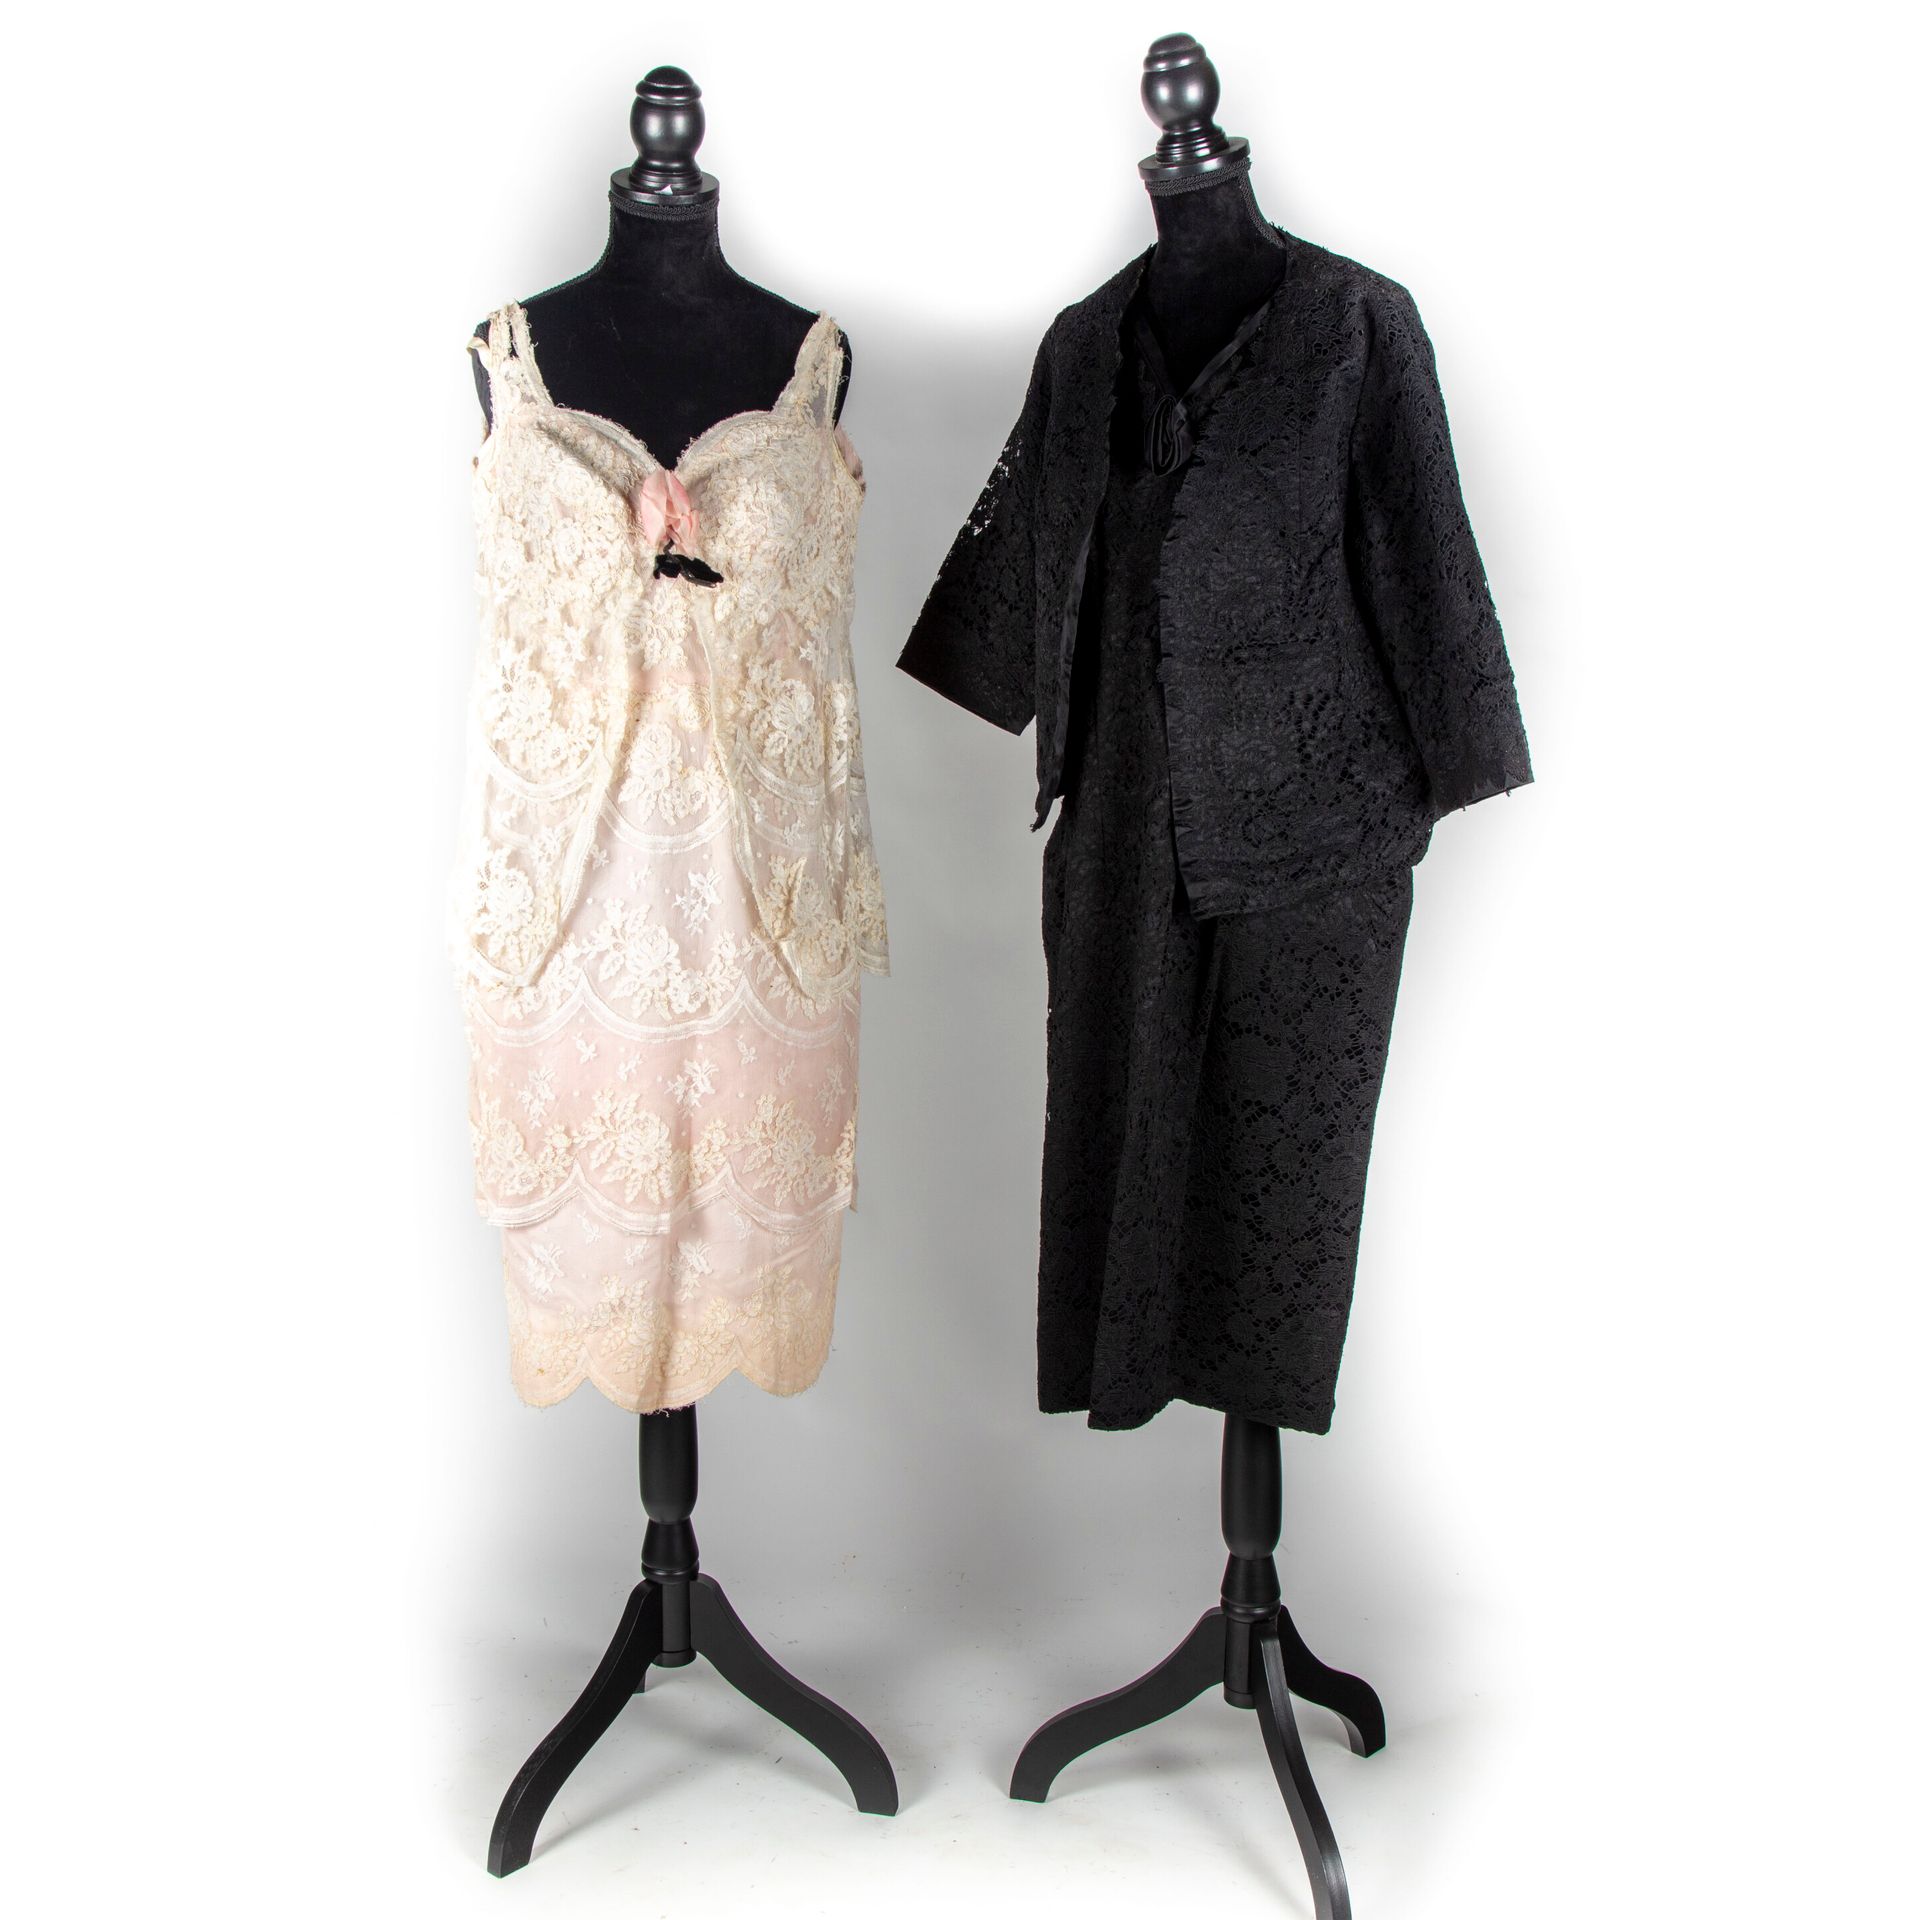 Null 没有格里菲》--约1950/60年

两件衣服。

金雀花、缎子和黑色蕾丝的鸡尾酒裙和短外套，无袖连衣裙，领子上有缎子玫瑰。

奶油色缎面和蕾丝翻边叠&hellip;